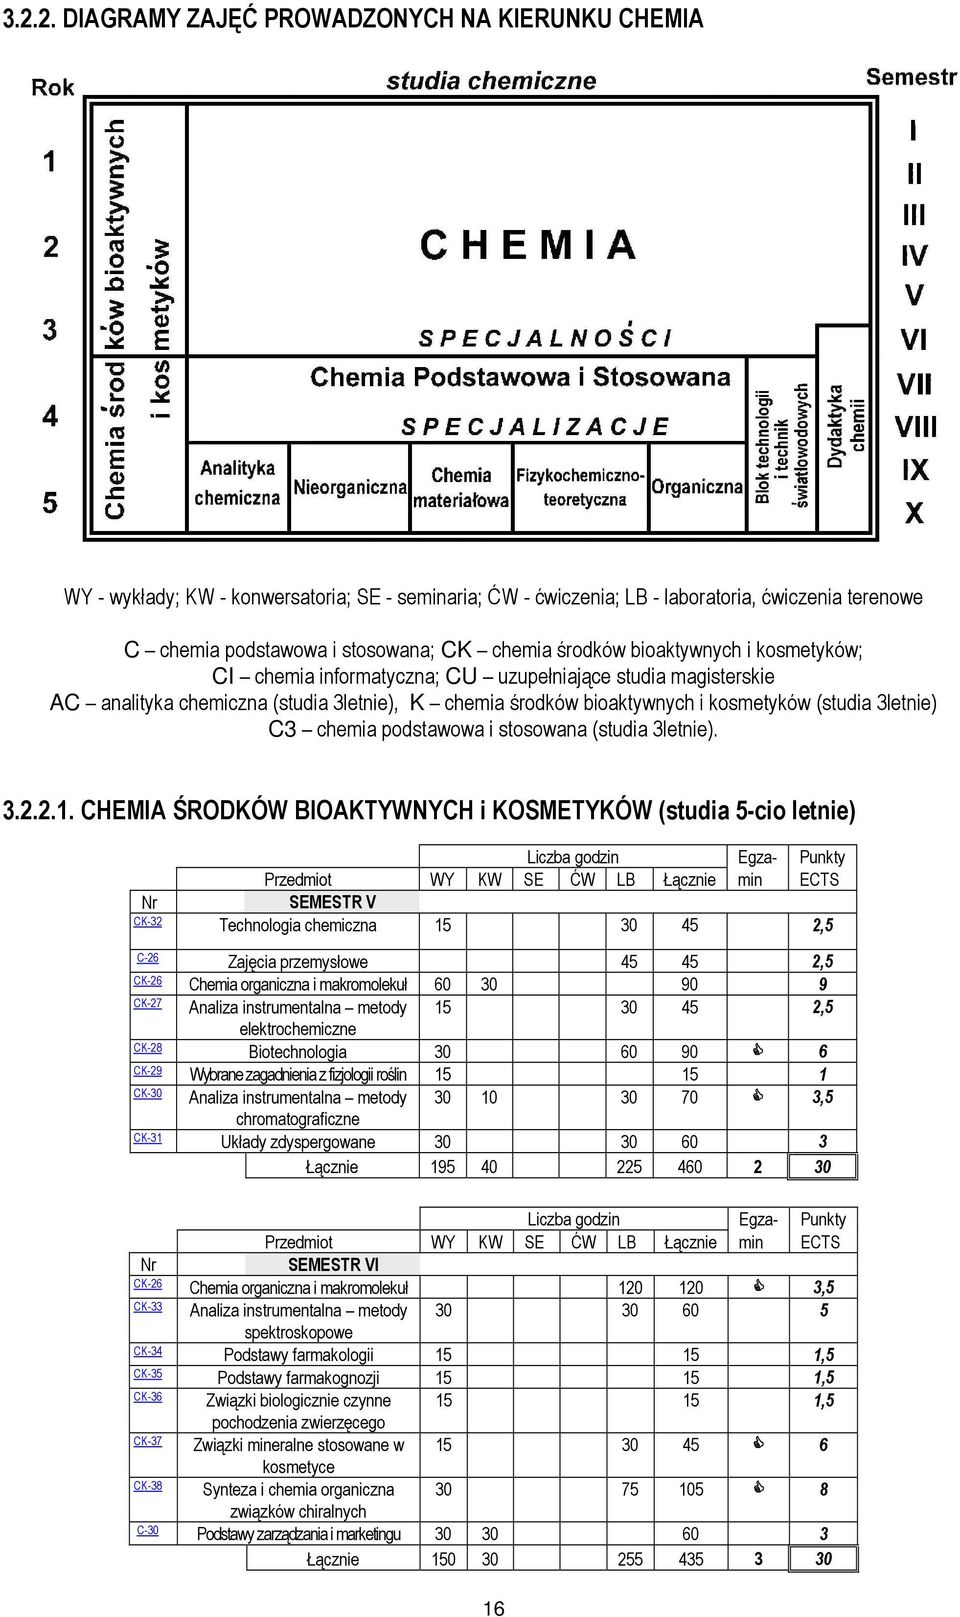 C3 chemia podstawowa i stosowana (studia 3letnie). 3.2.2.1.